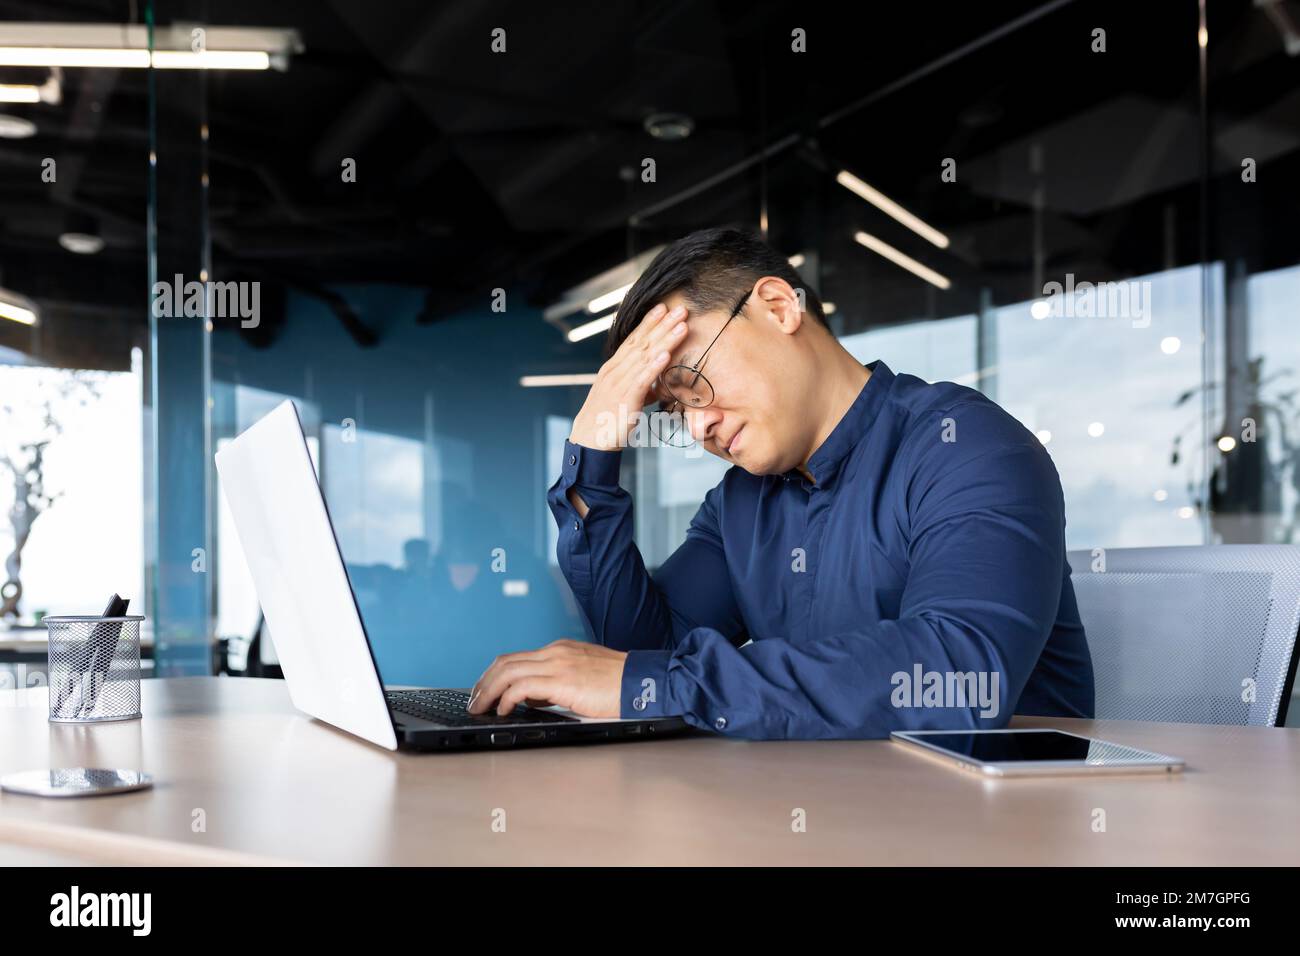 Ein müder junger Asiate sitzt im Büro am Tisch, hält seinen Kopf, fühlt Kopfschmerzen, Spannung, Migräne nach einem harten Überstunden-Tag, zittert. Stockfoto